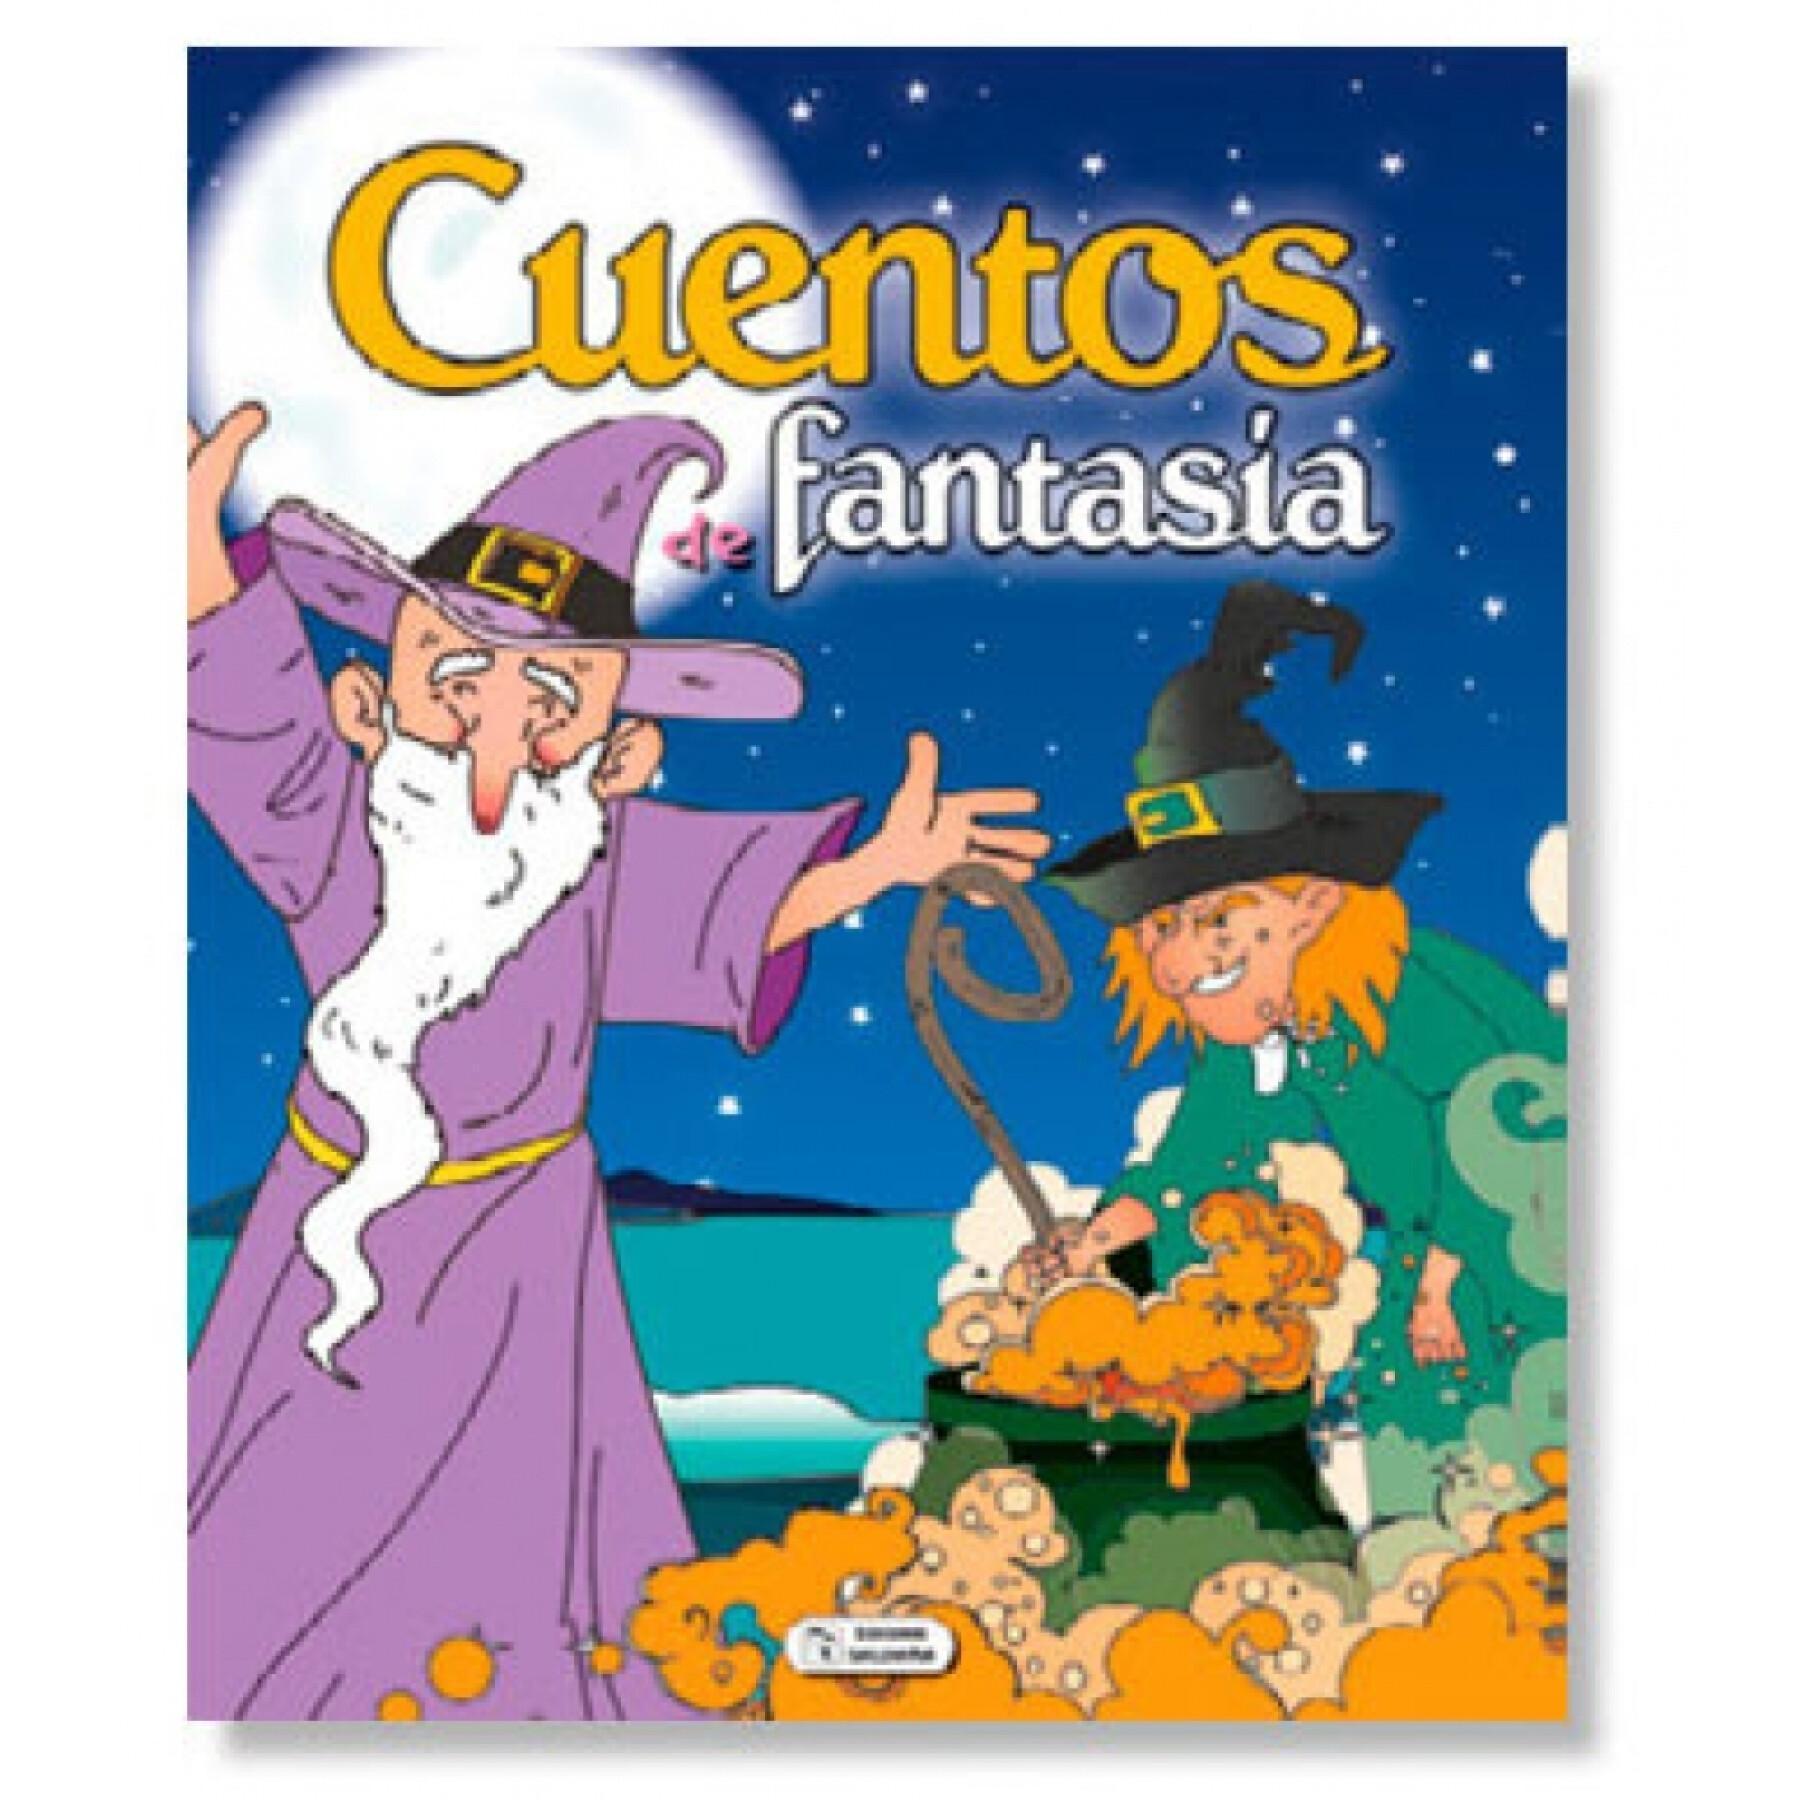 280-sidig fantasifull berättelsebok Ediciones Saldaña